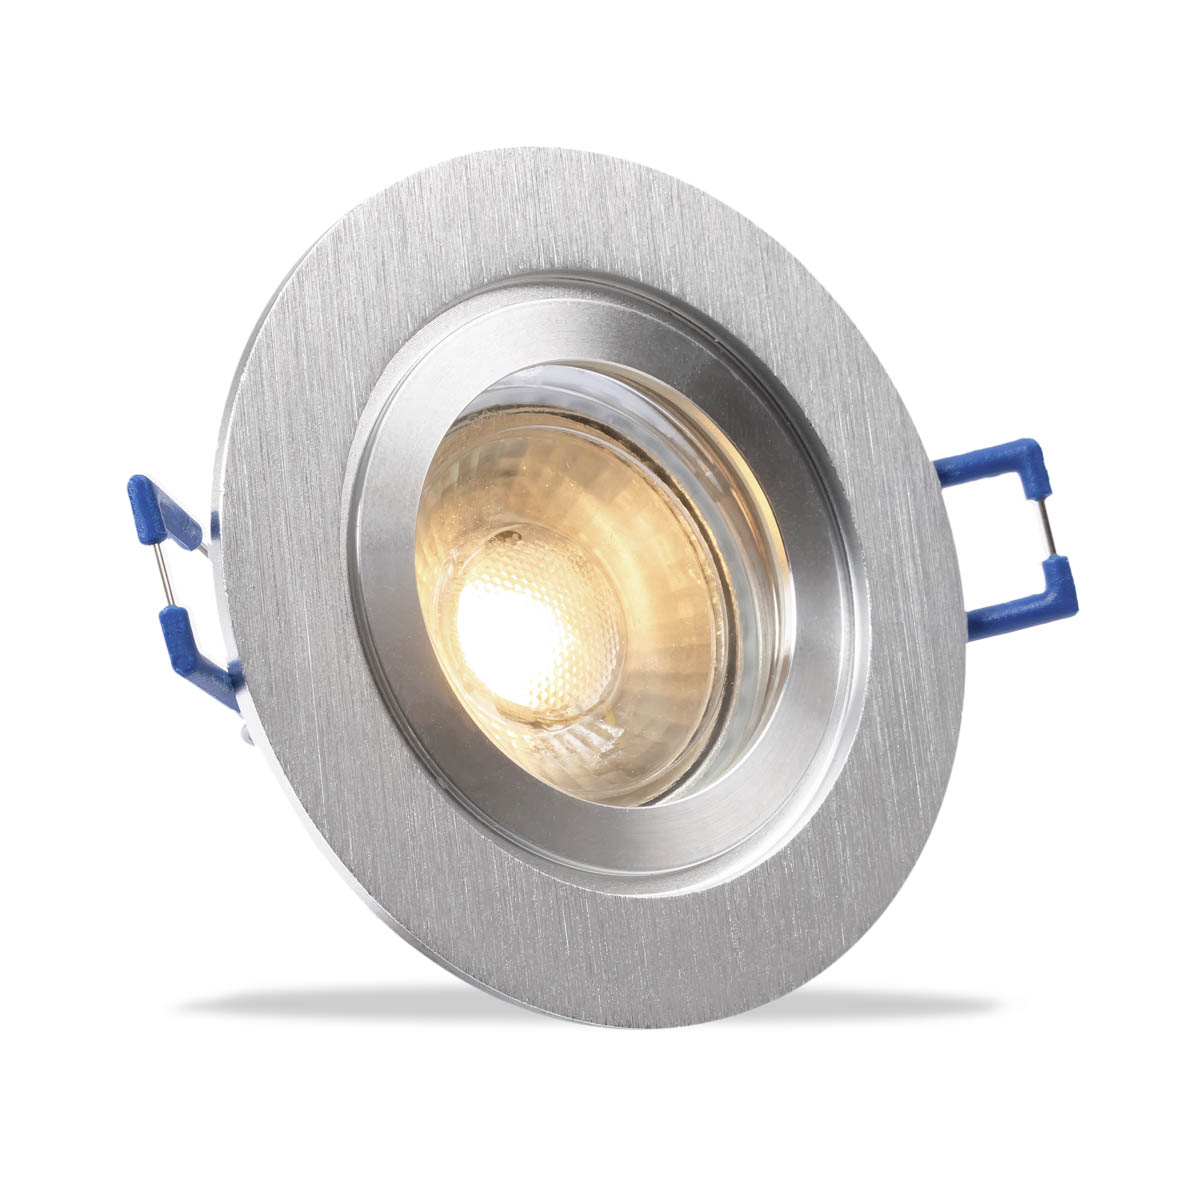 Einbauspot IP44 rund - Abdeckring:  Silber-gebürstet - LED Leuchtmittel:  GU10 5W neutralweiß